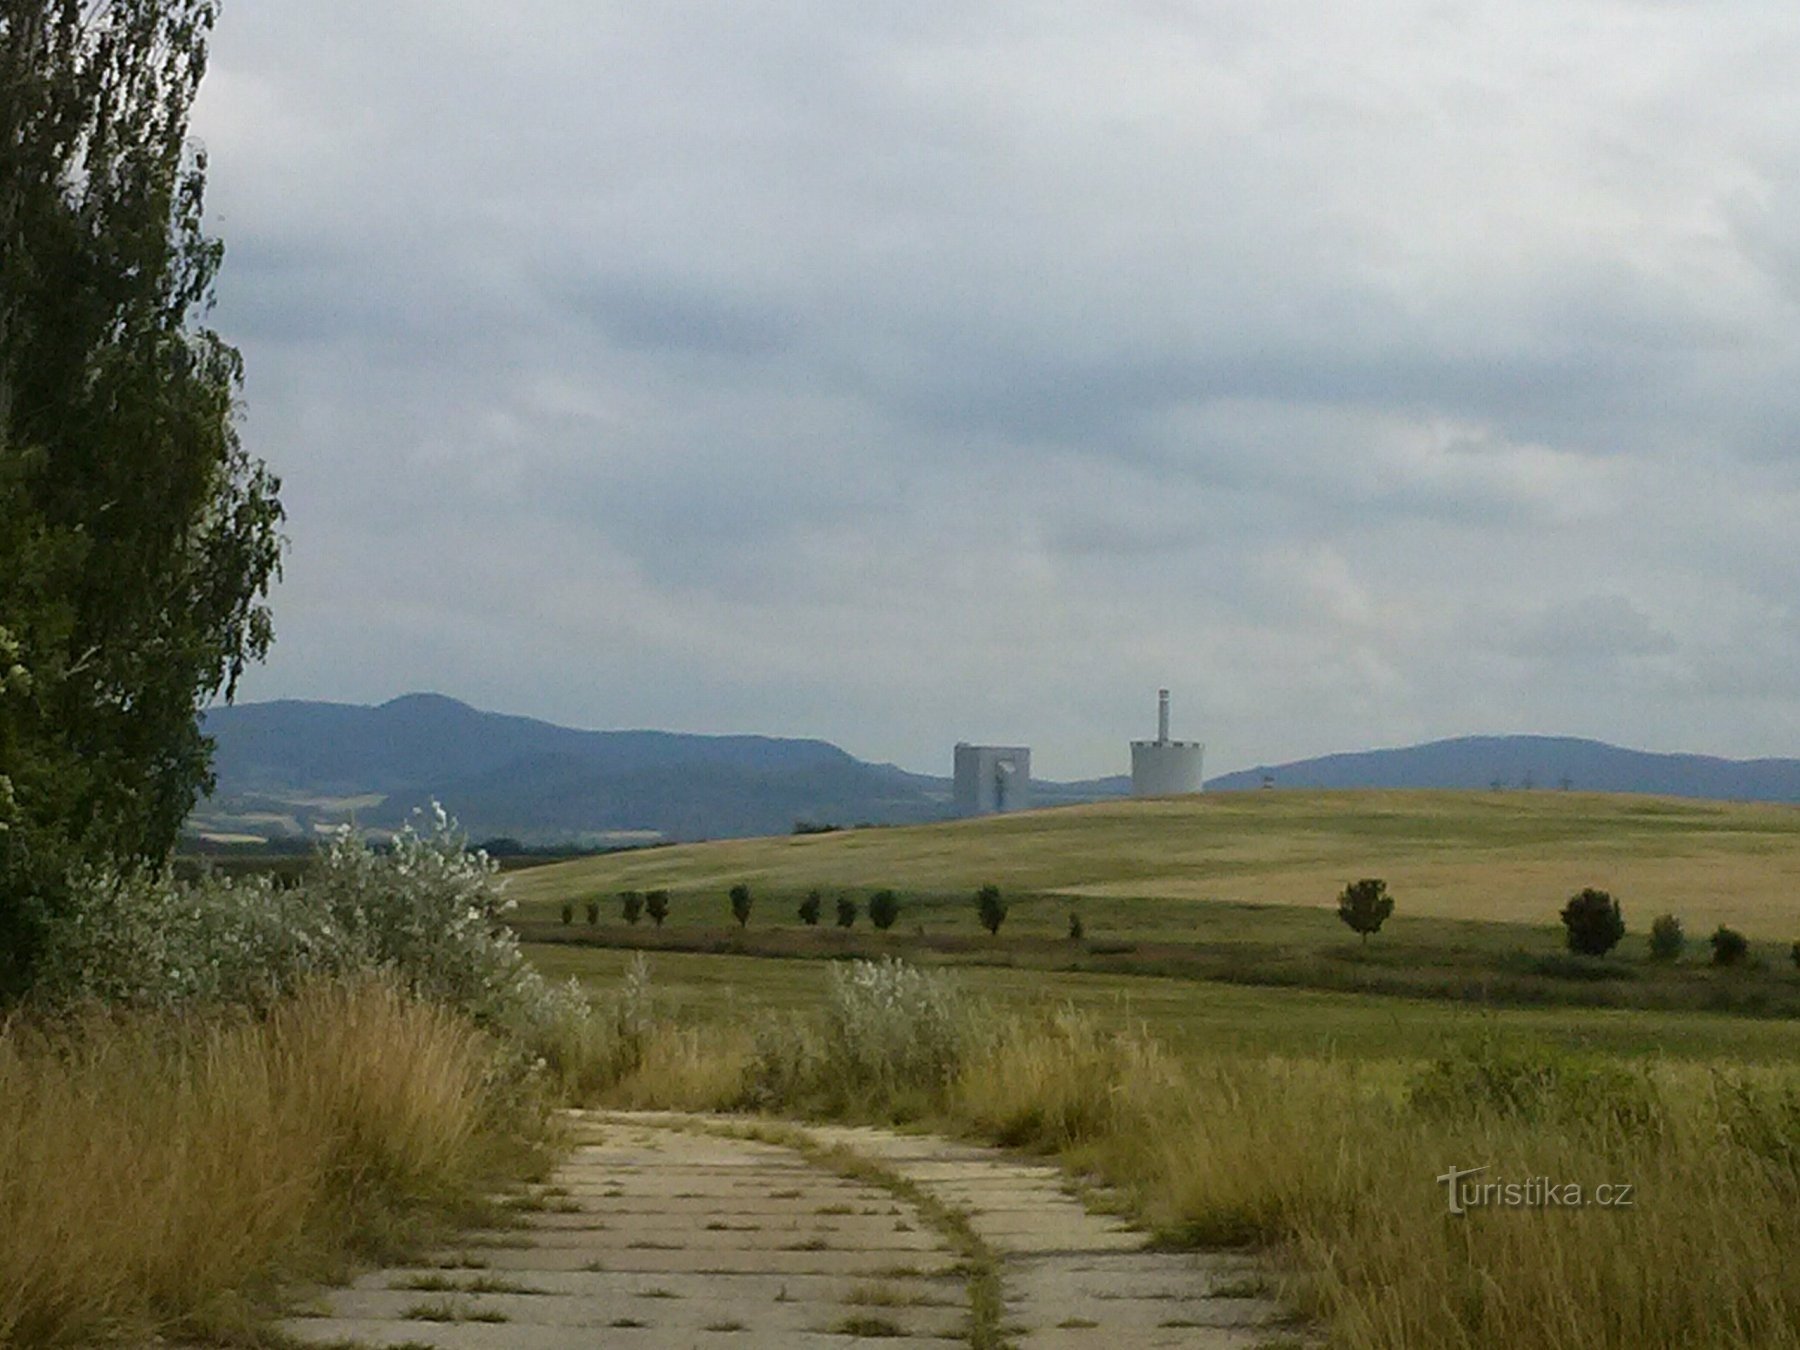 Una vista del paisaje, asoman las torres de la central eléctrica de Chotějovice